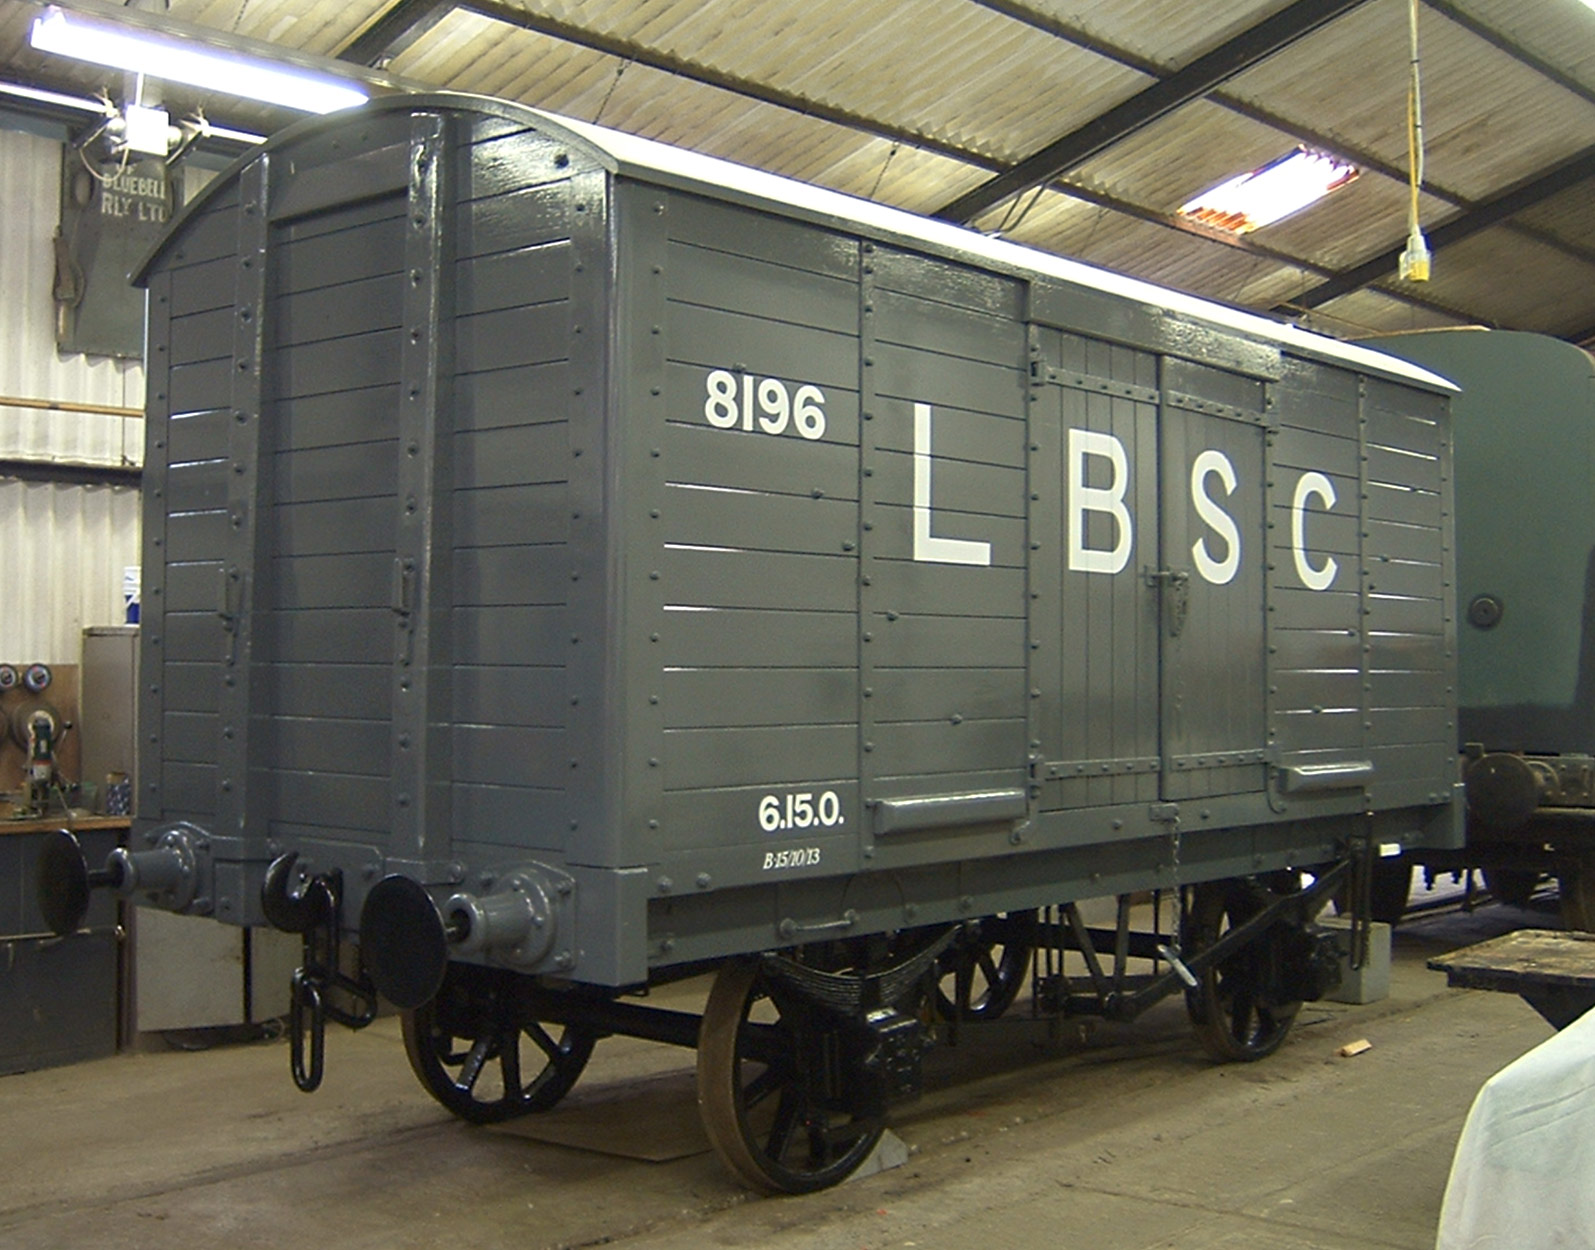 LBSCR van as restored, August 2004